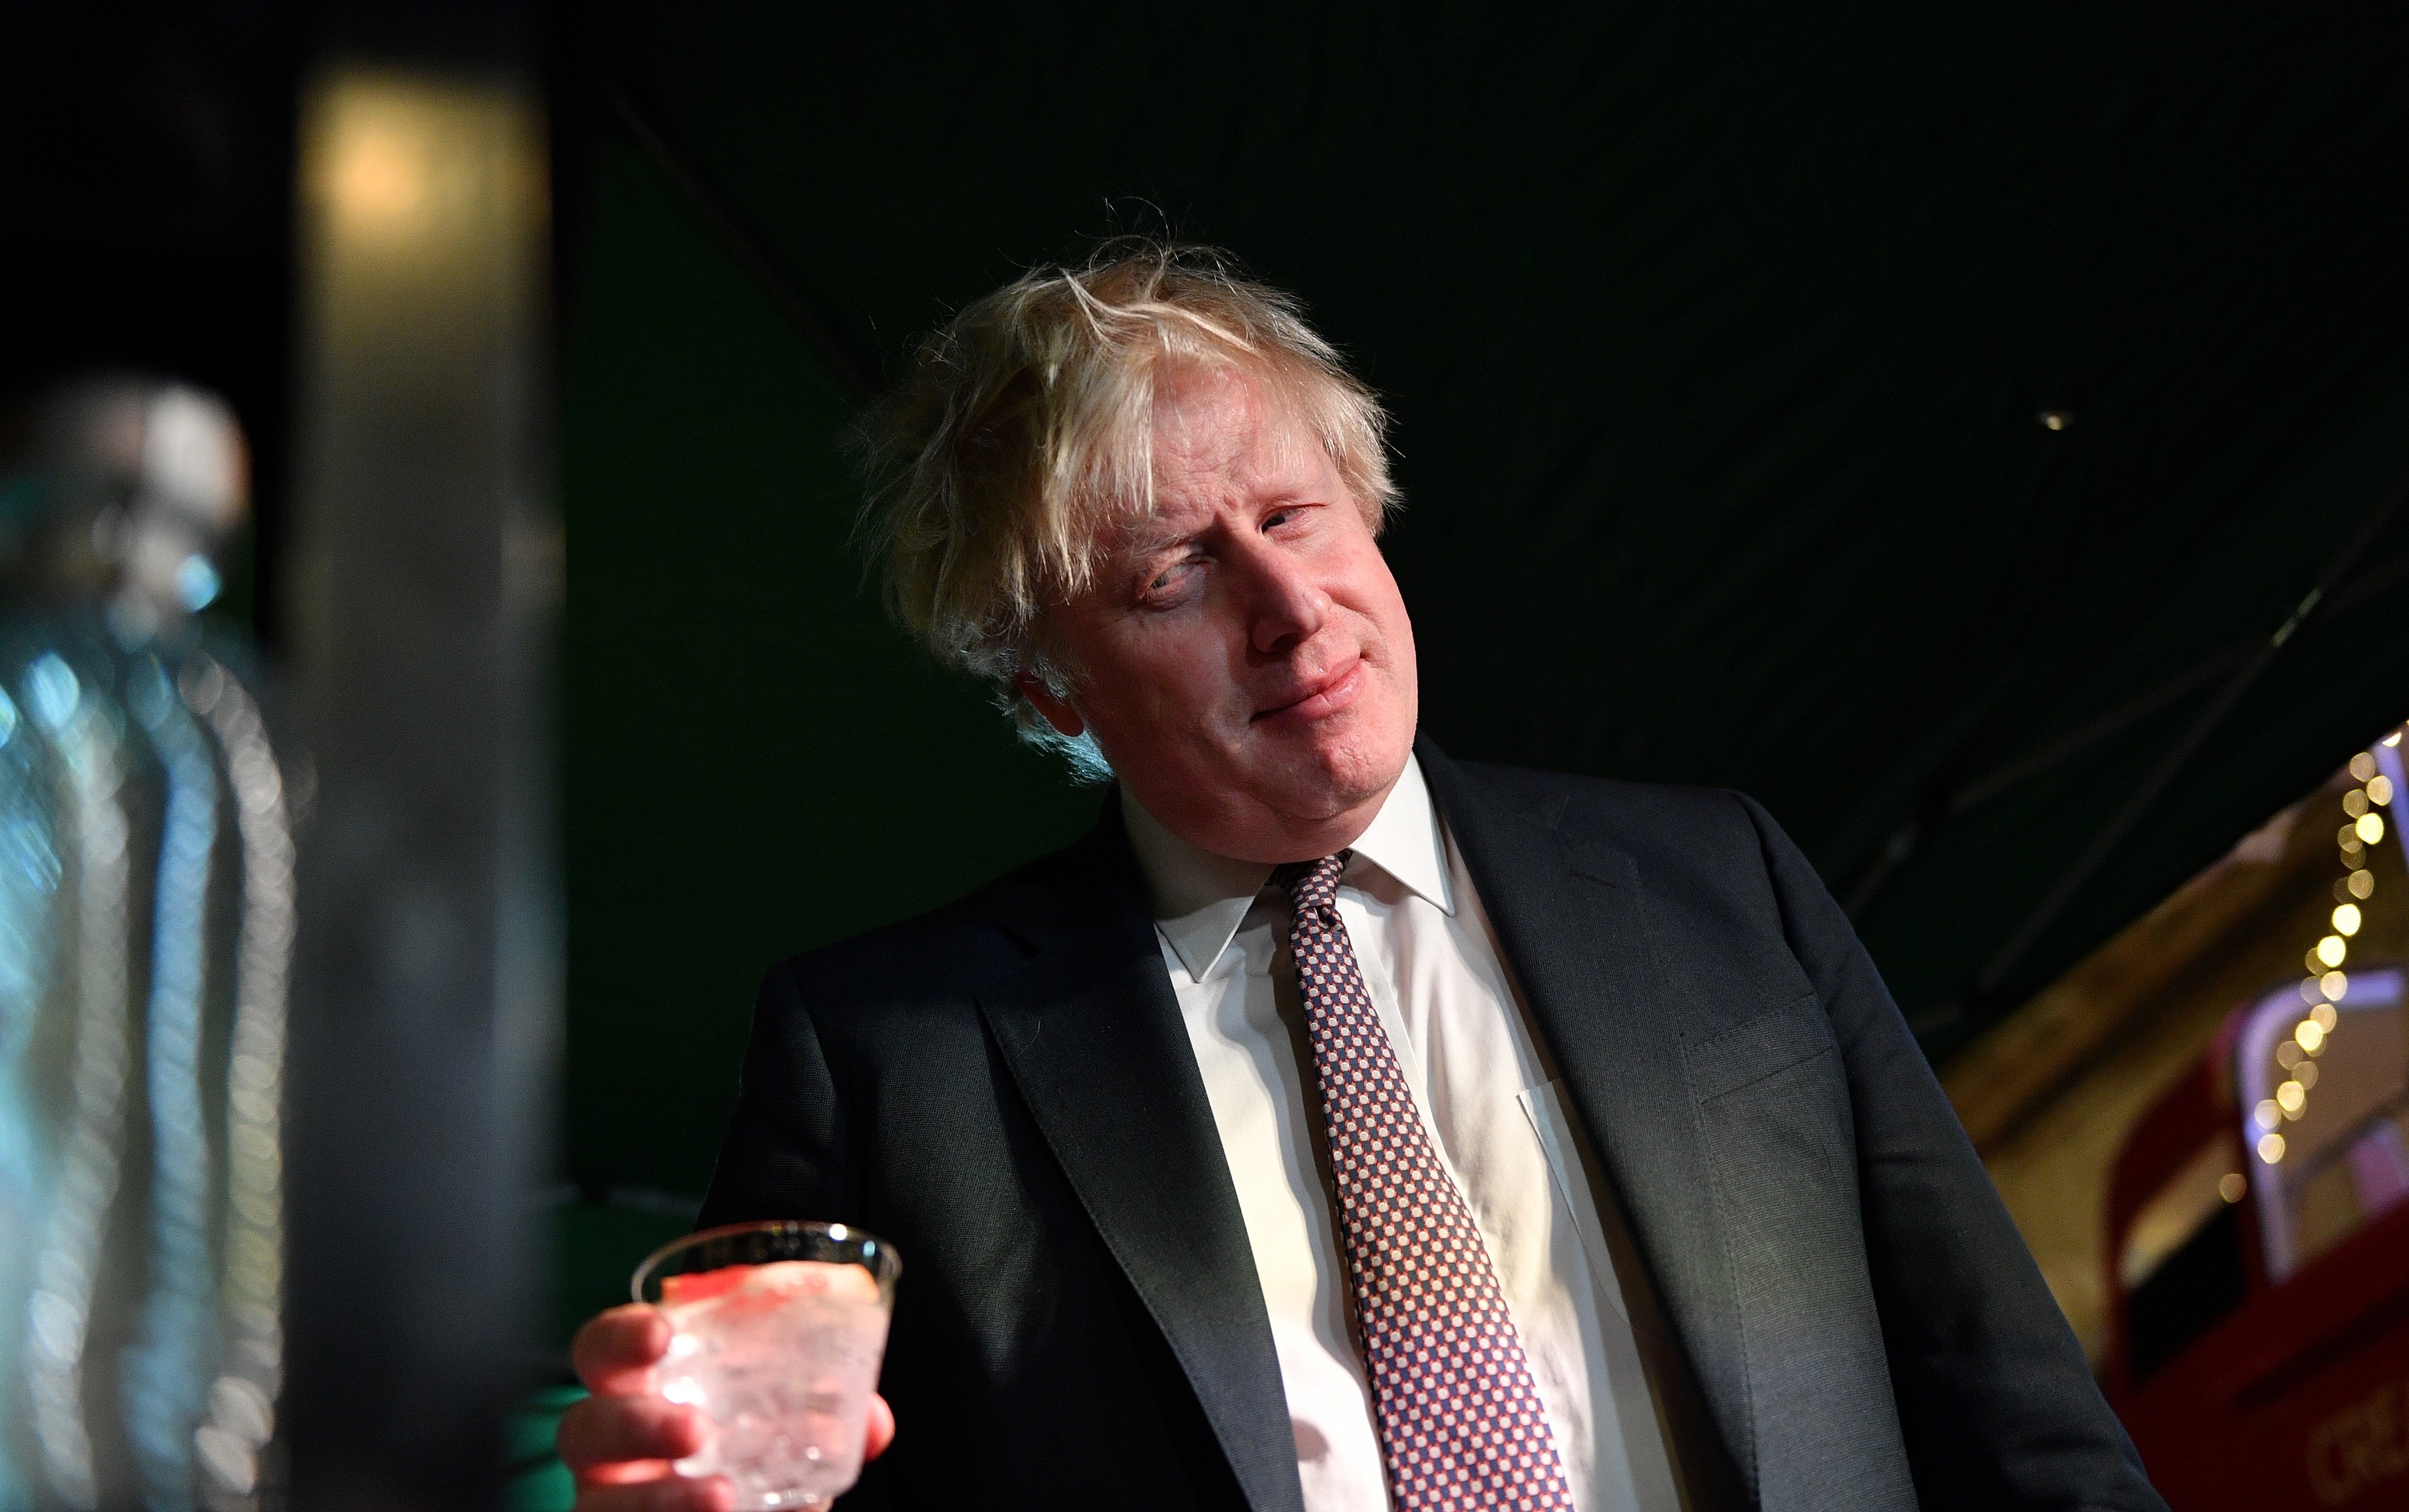 Boris Johnson passejant el gos de nit en calçotets i mitjons: fotos inexplicables